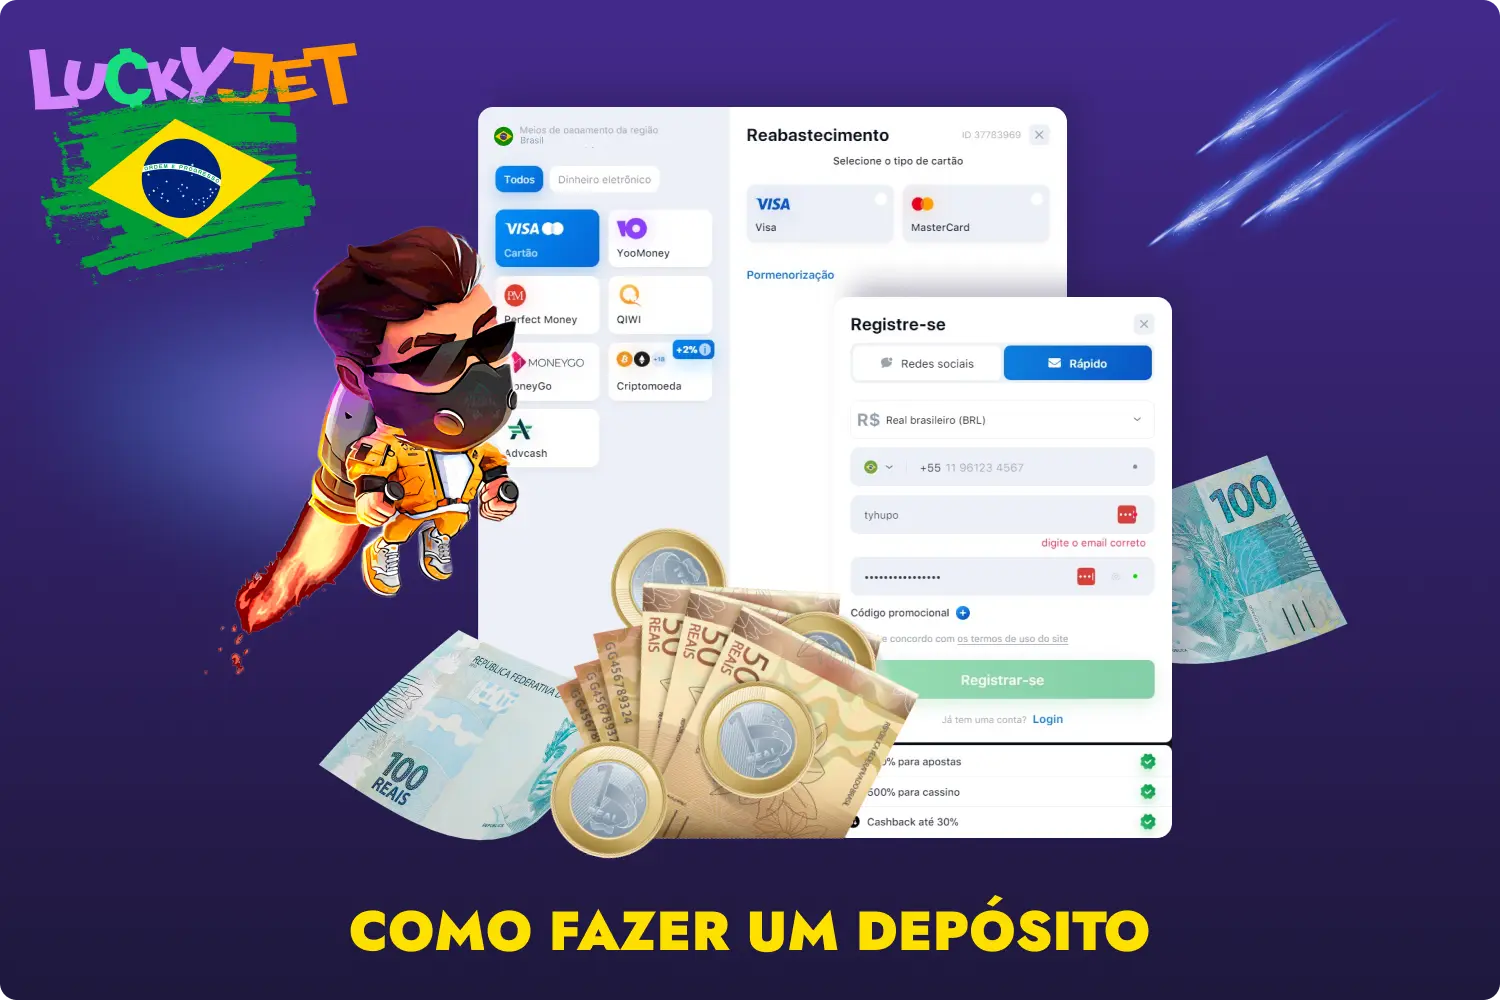 Depois de financiar uma conta no 1win, os jogadores do Brasil poderão jogar Lucky Jet a dinheiro real